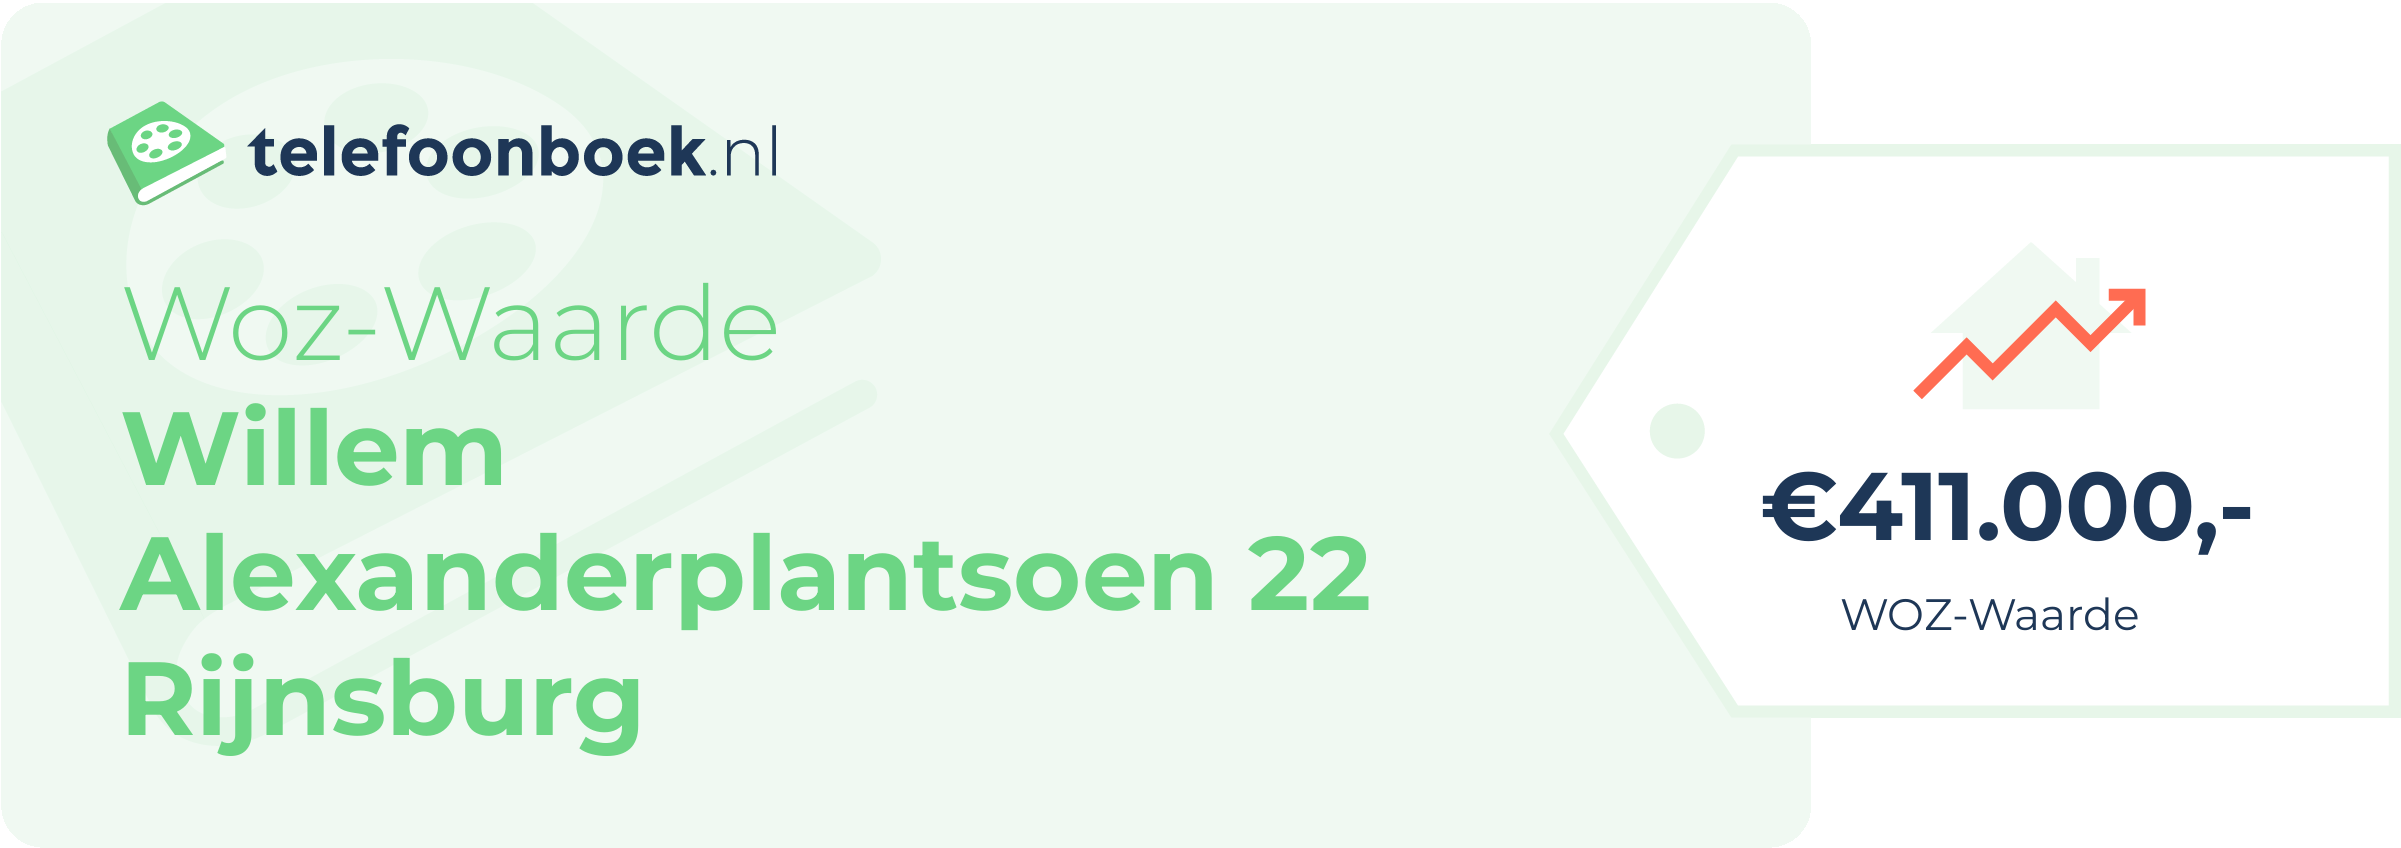 WOZ-waarde Willem Alexanderplantsoen 22 Rijnsburg